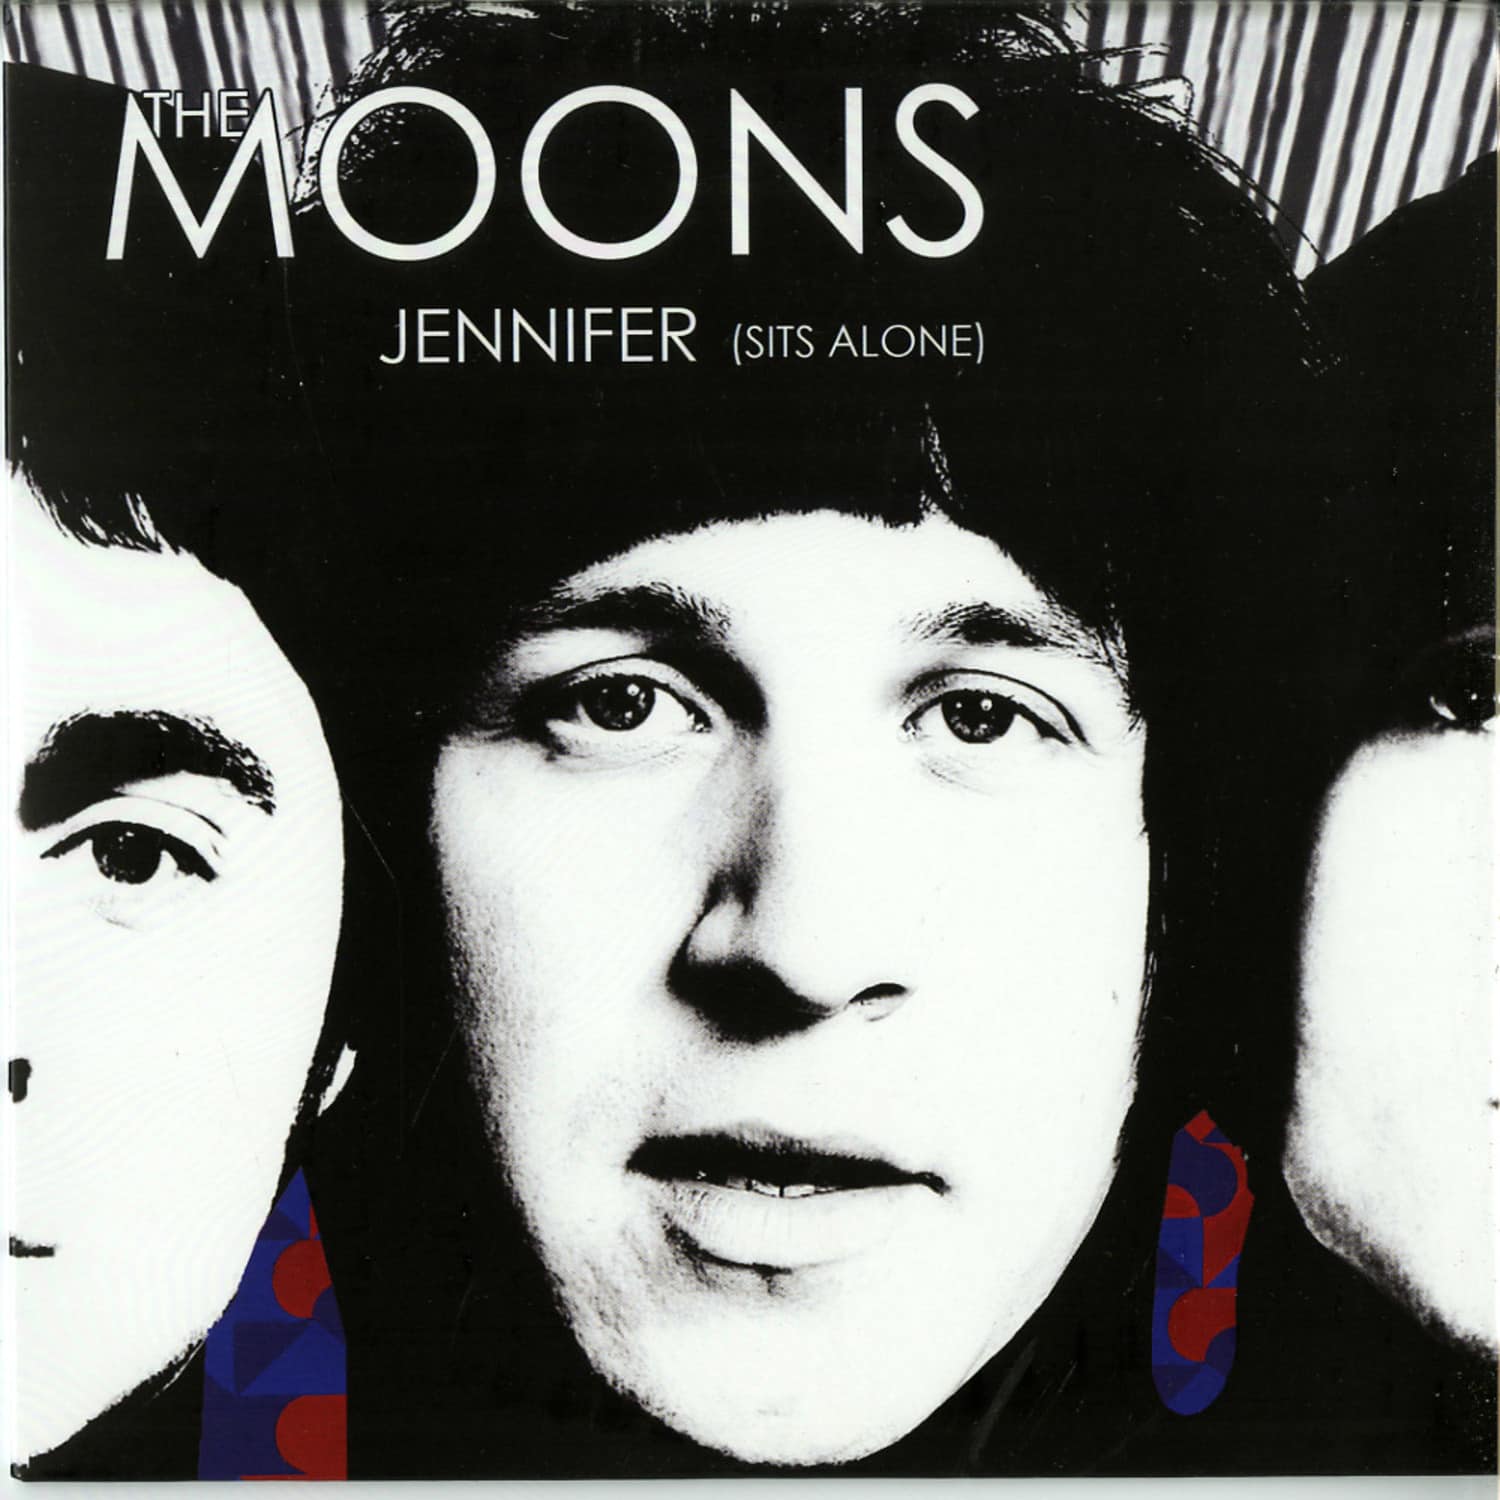 The Moons - JENNIFER 